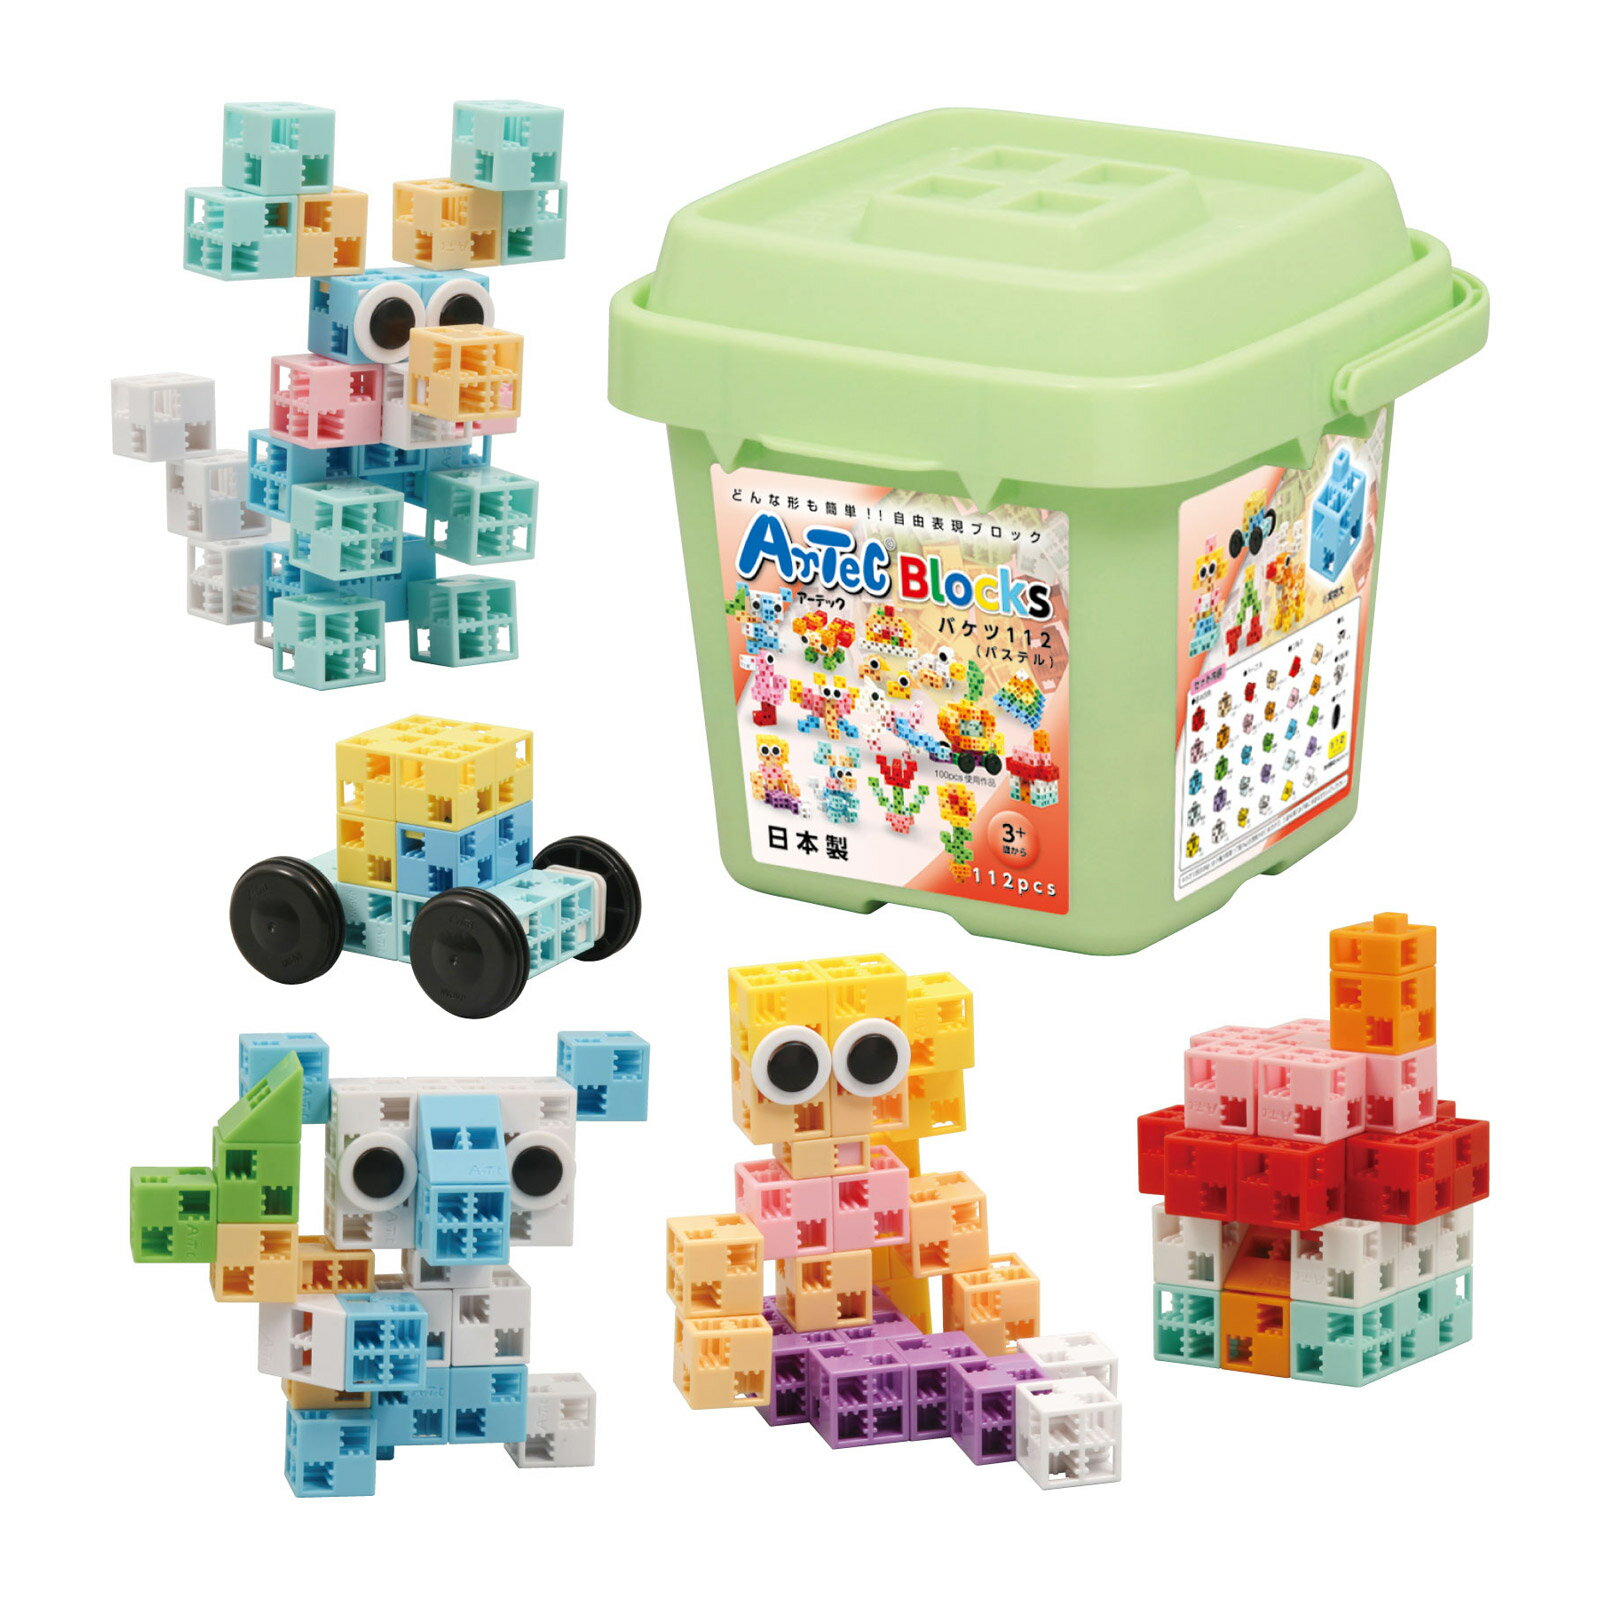 ブロック おもちゃ アーテックブロック バケツ [パステル] Artecブロック 基本セット ブロック 日本製 ゲーム レゴ・レゴブロックのように自由に遊べます